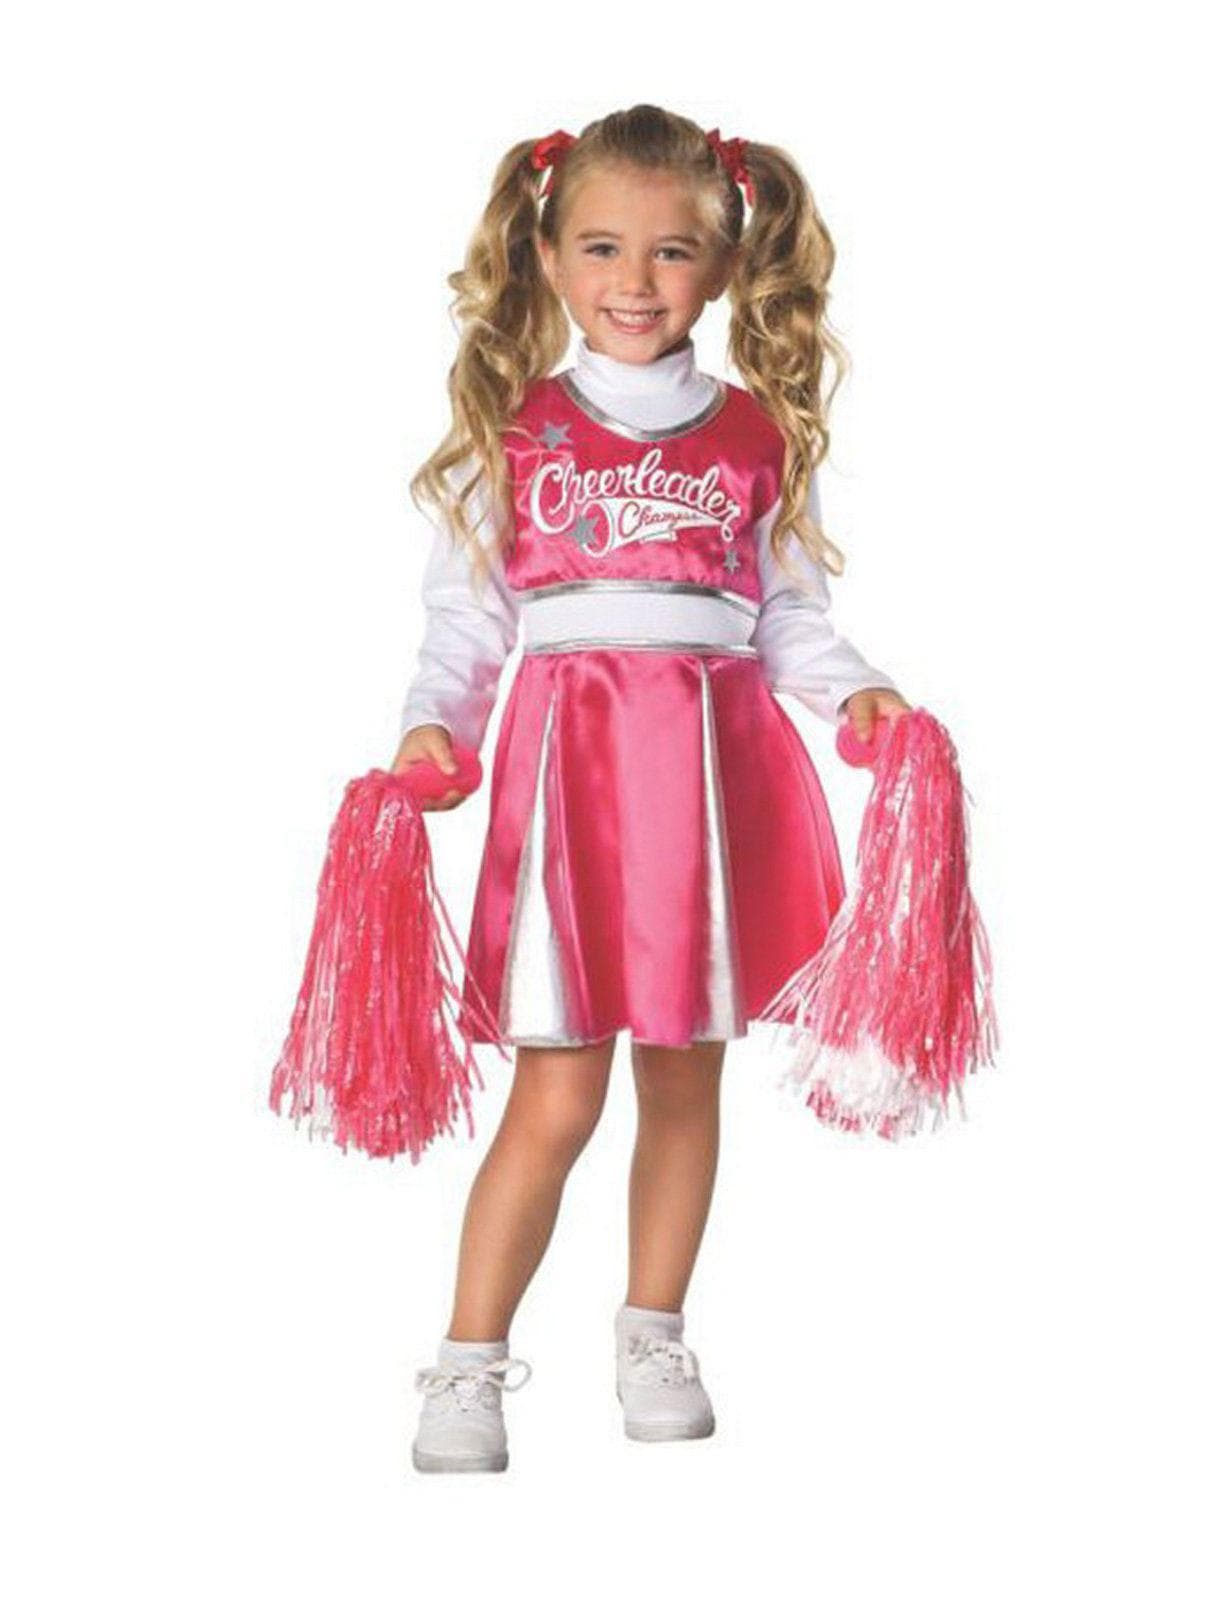 Kids Pinkwhite Cheerleader Costume - costumes.com